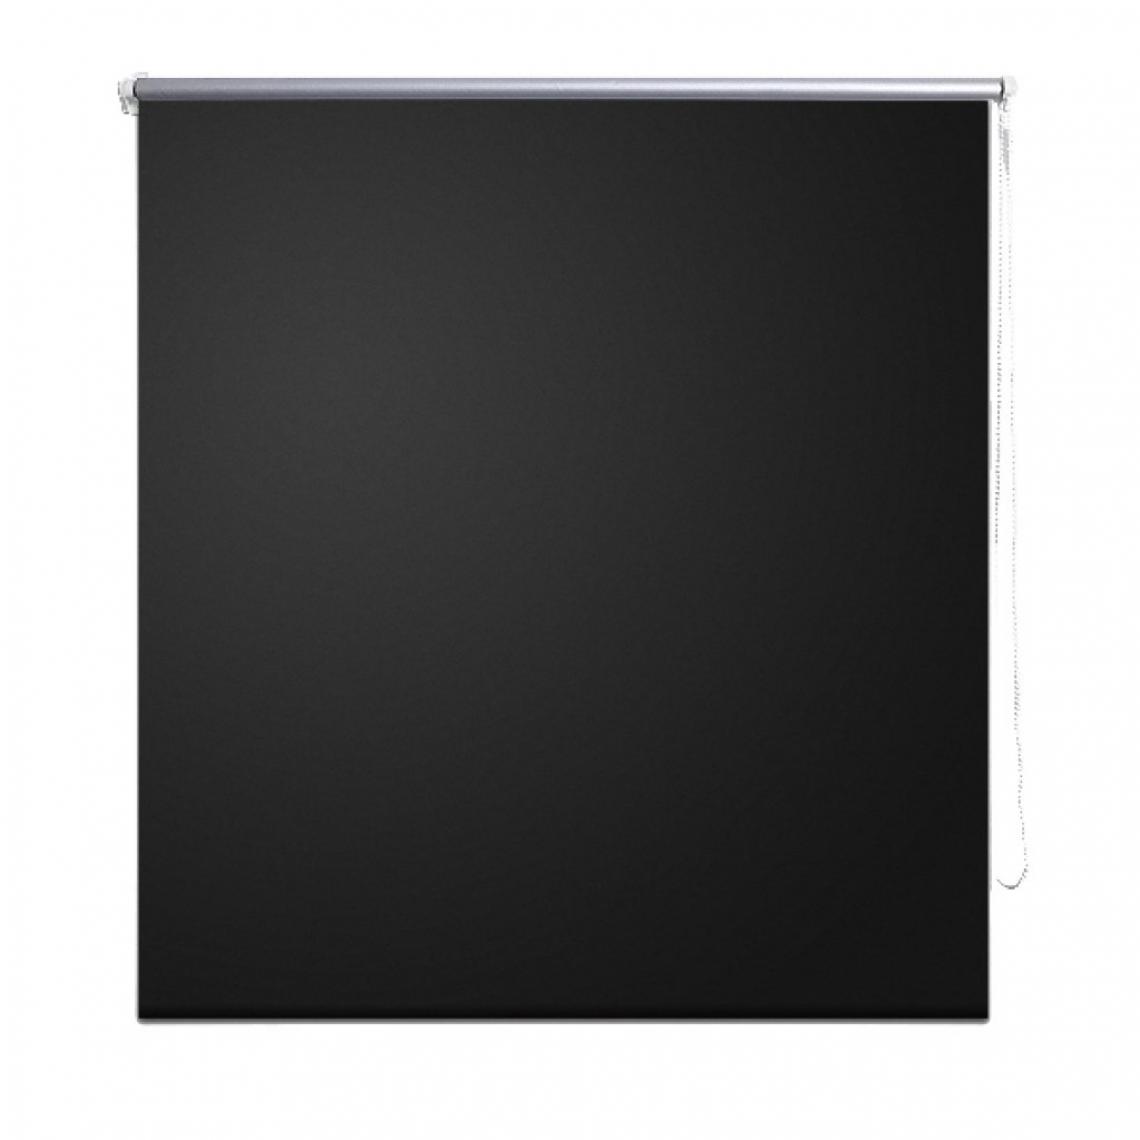 Helloshop26 - Store enrouleur noir occultant 100 x 230 cm fenêtre rideau pare-vue volet roulant 4102053 - Store compatible Velux